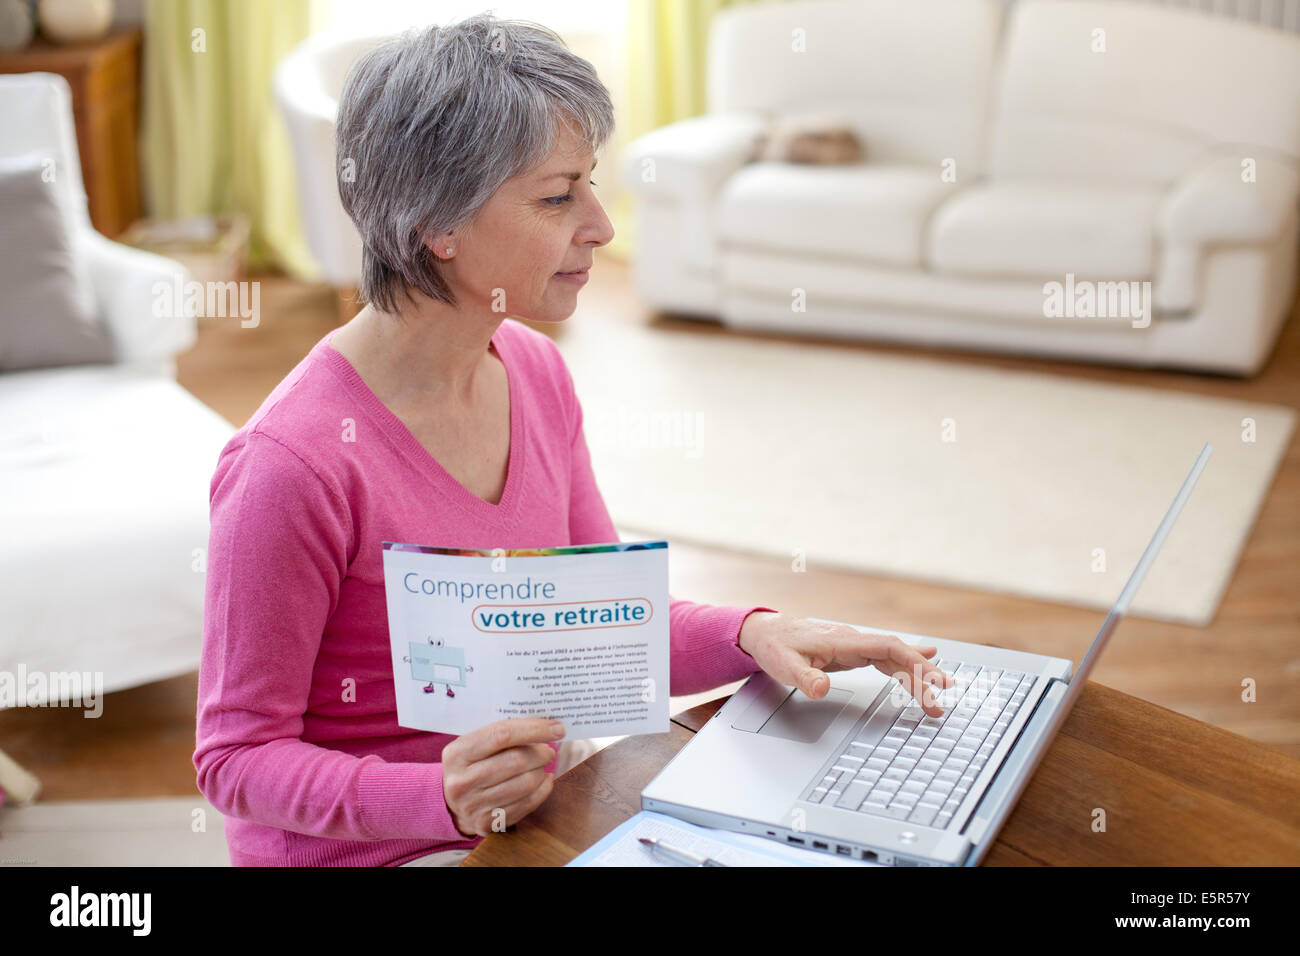 Documentation sur la retraite femme consulting. Banque D'Images